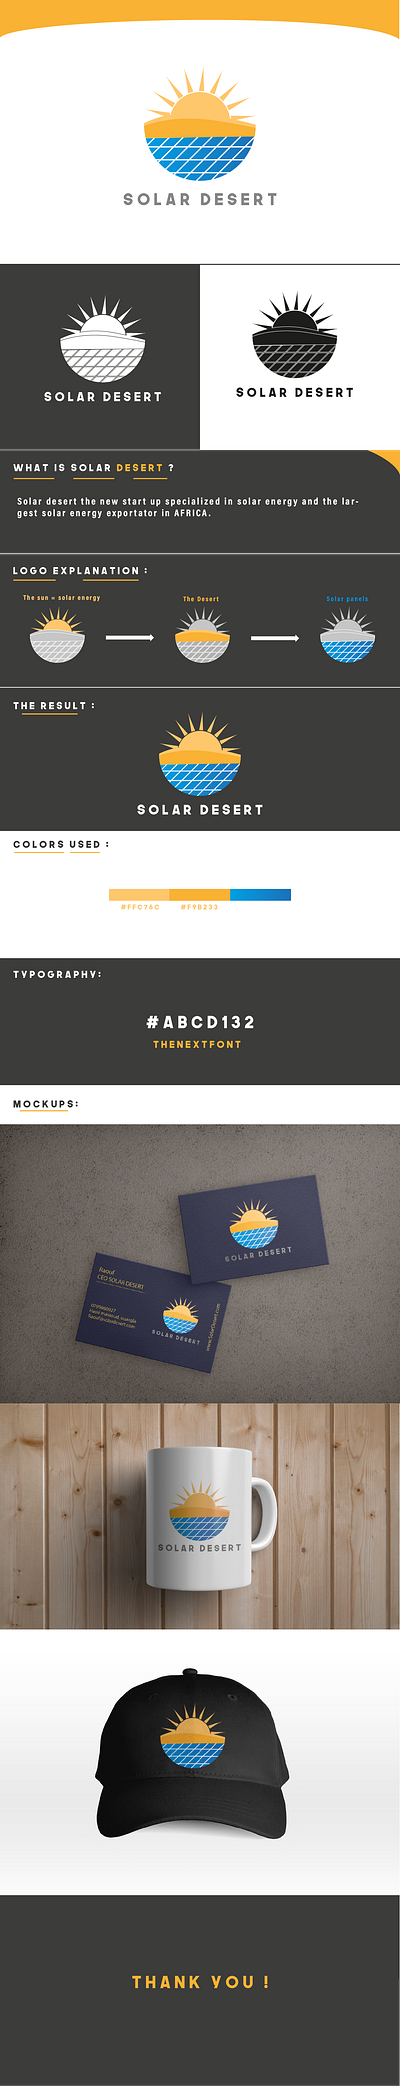 SOLAR DESERT LOGO 3d animation branding graphic design logo ui